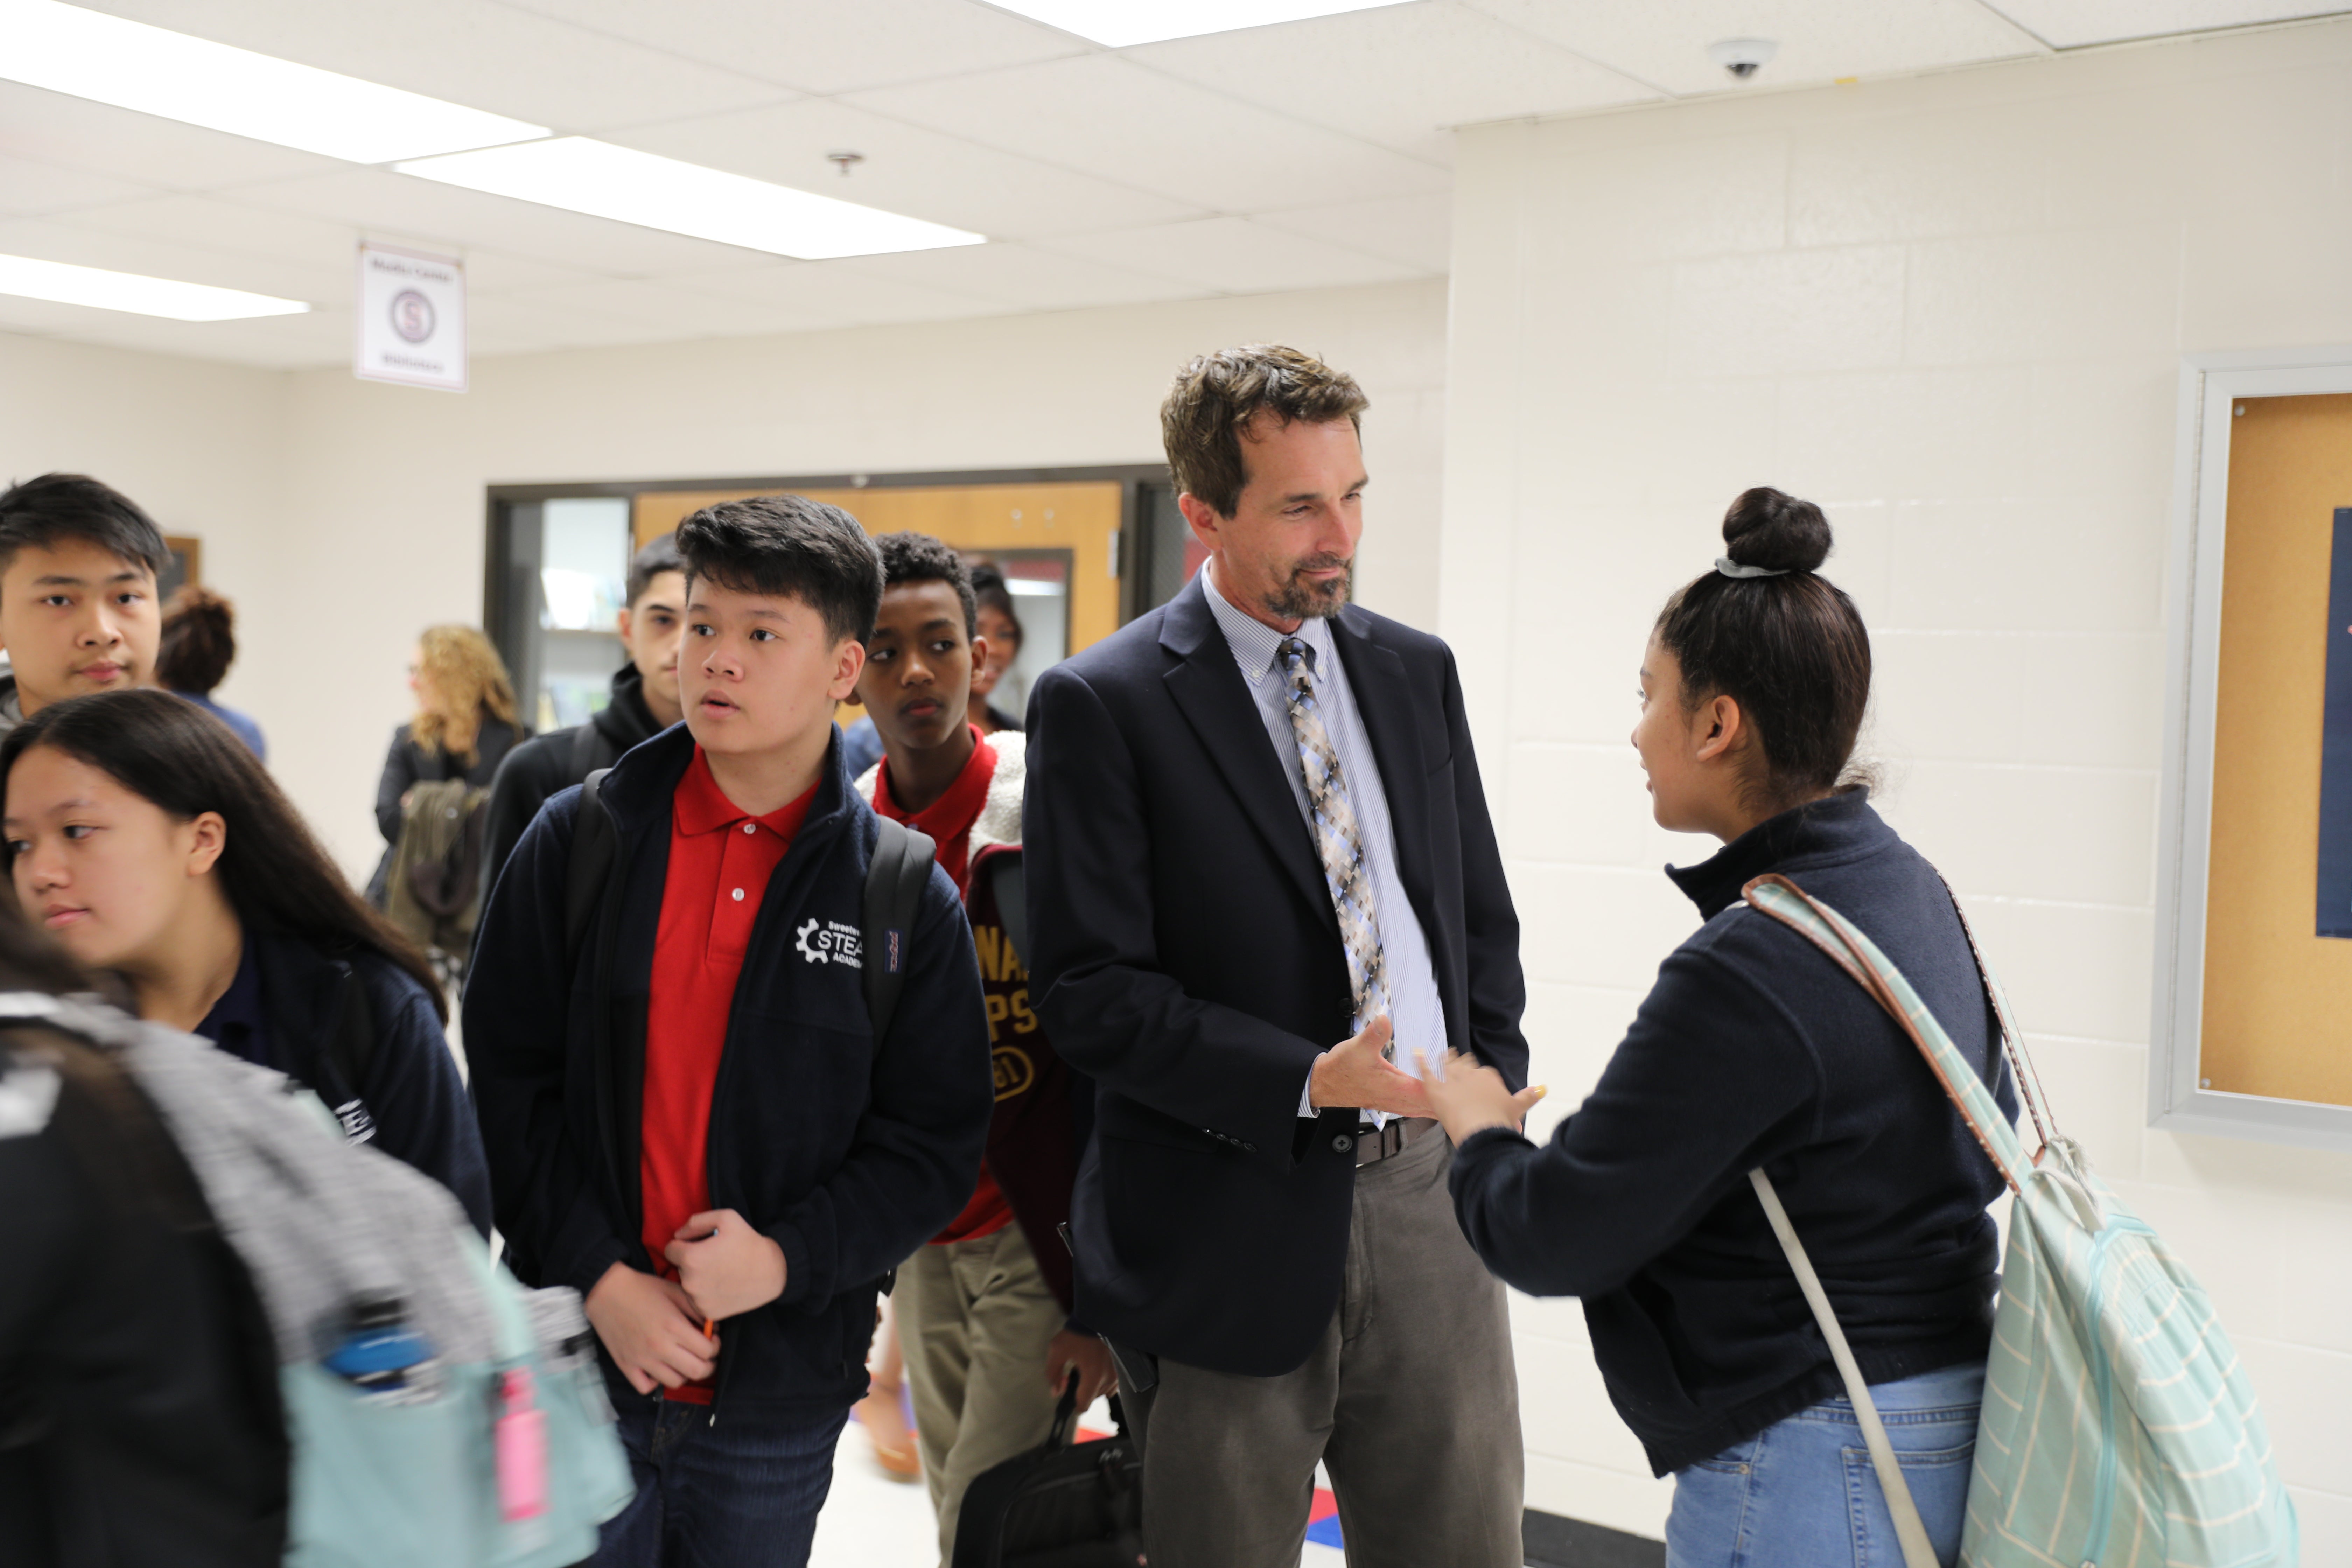 A principal greets a student between classes.